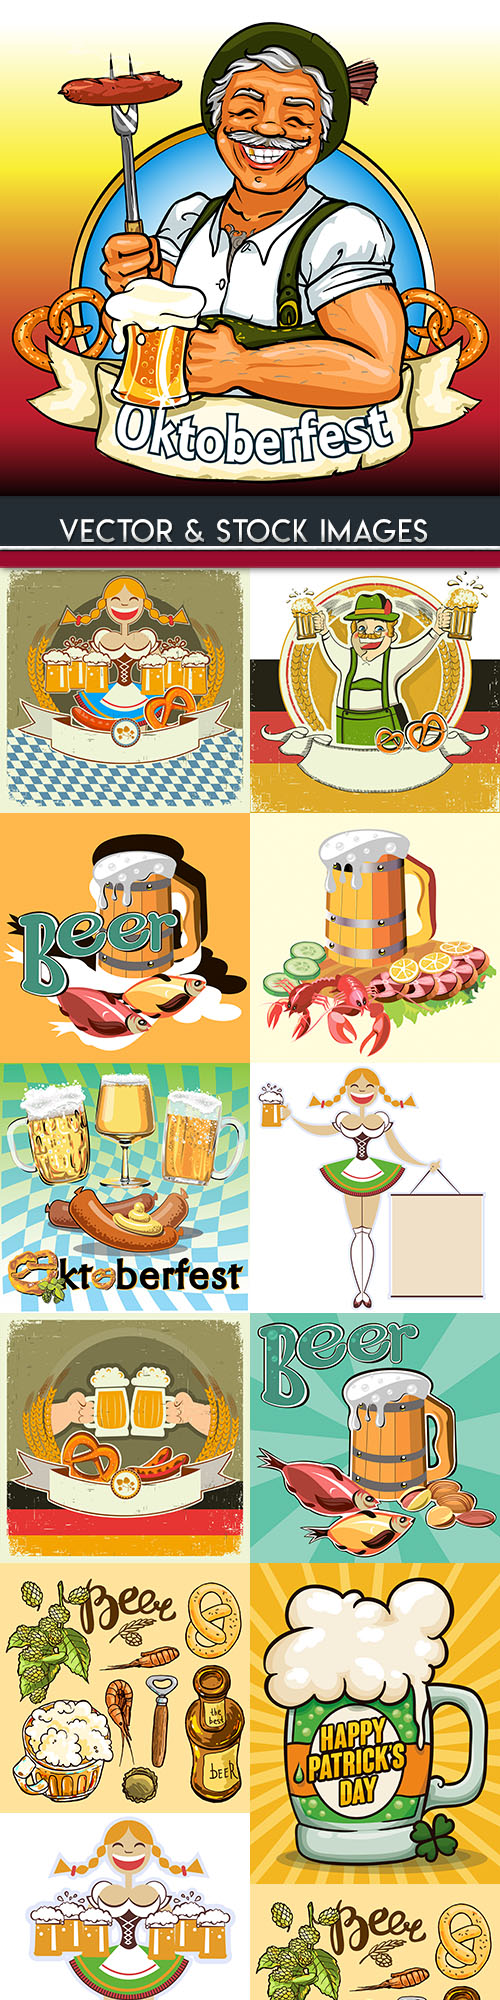 Oktoberfest beer vintage illustration collection